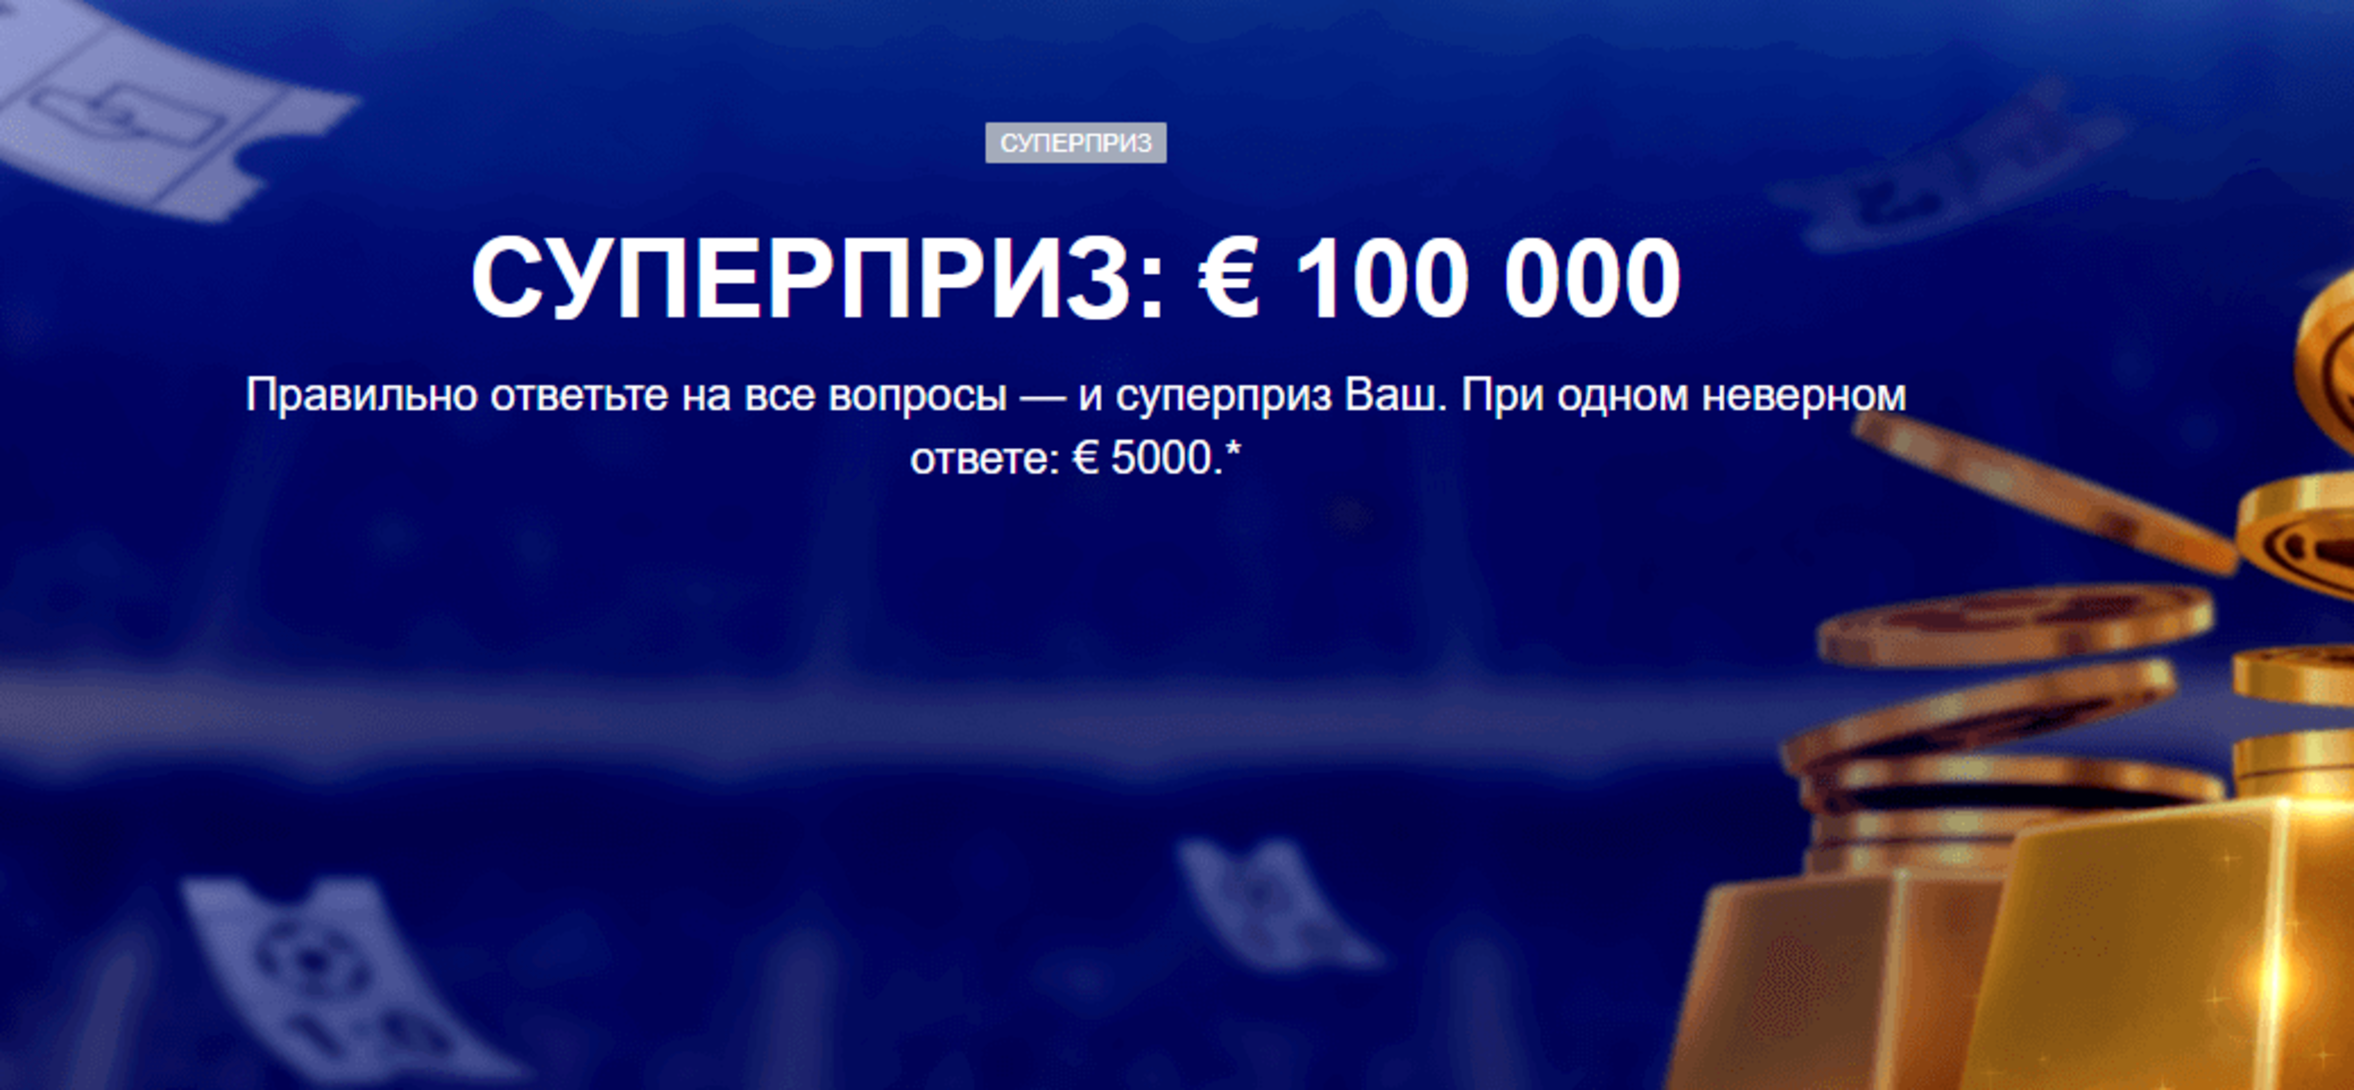 БК Marathonbet разыгрывает 100000 евро в футбольной викторине